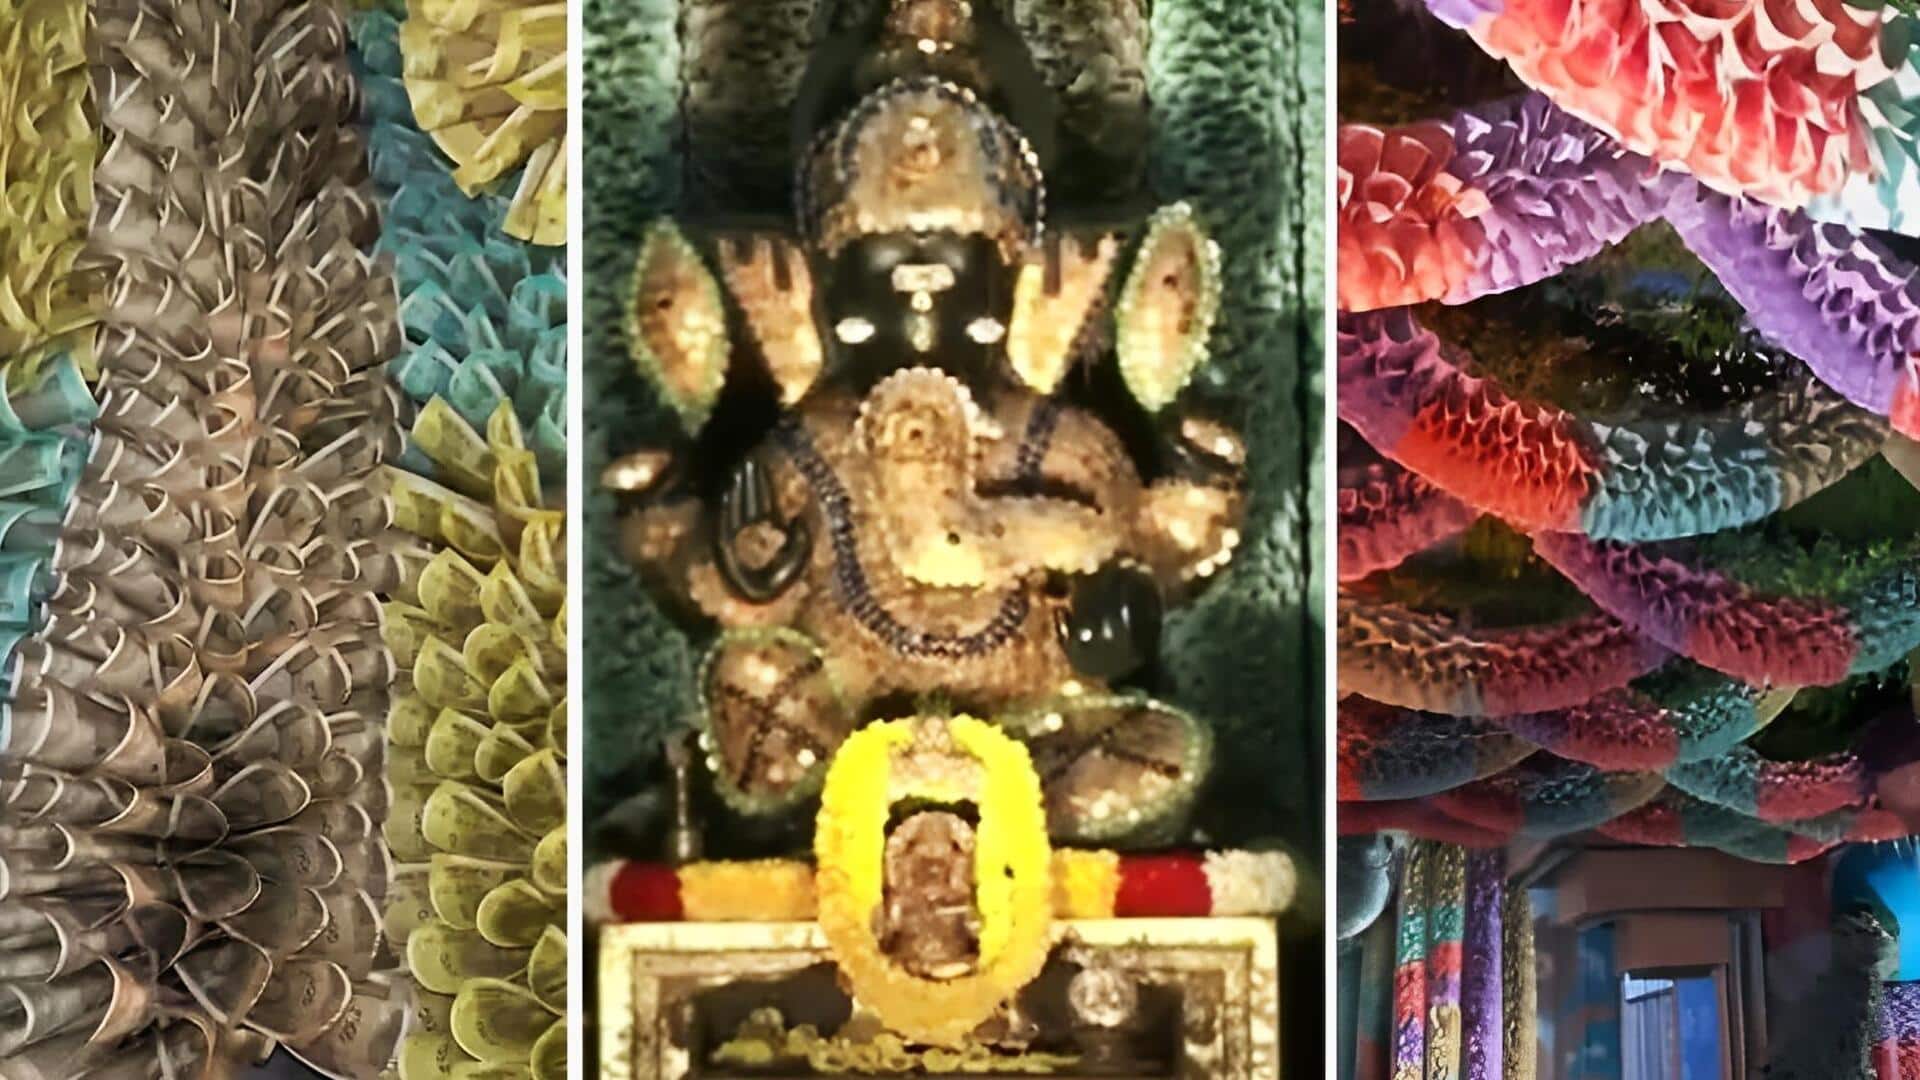 बेंगलुरु: करोड़ों रुपये के नोटों और सिक्कों से सजाया गया श्री सत्य गणपति मंदिर, देखें वीडियो